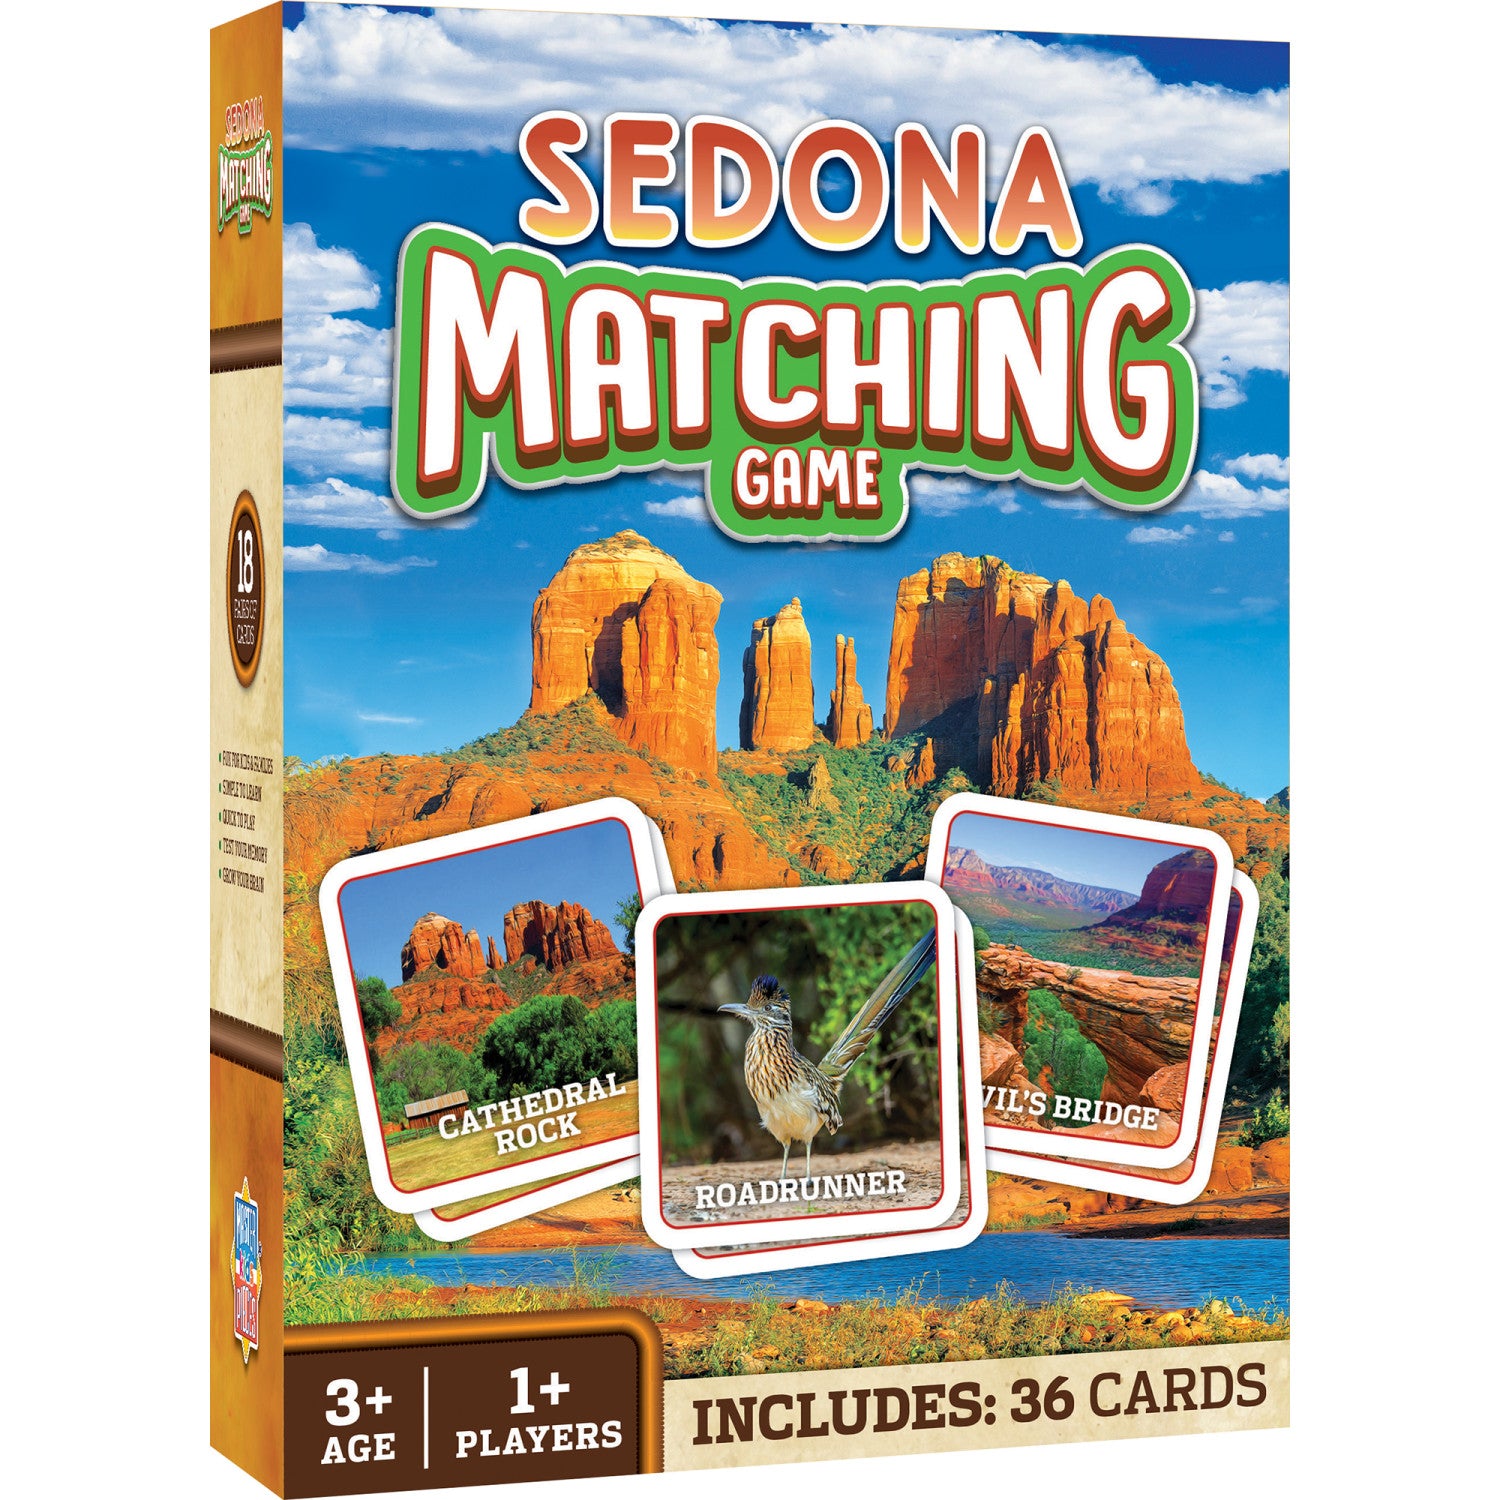 Sedona, Arizona Matching Game